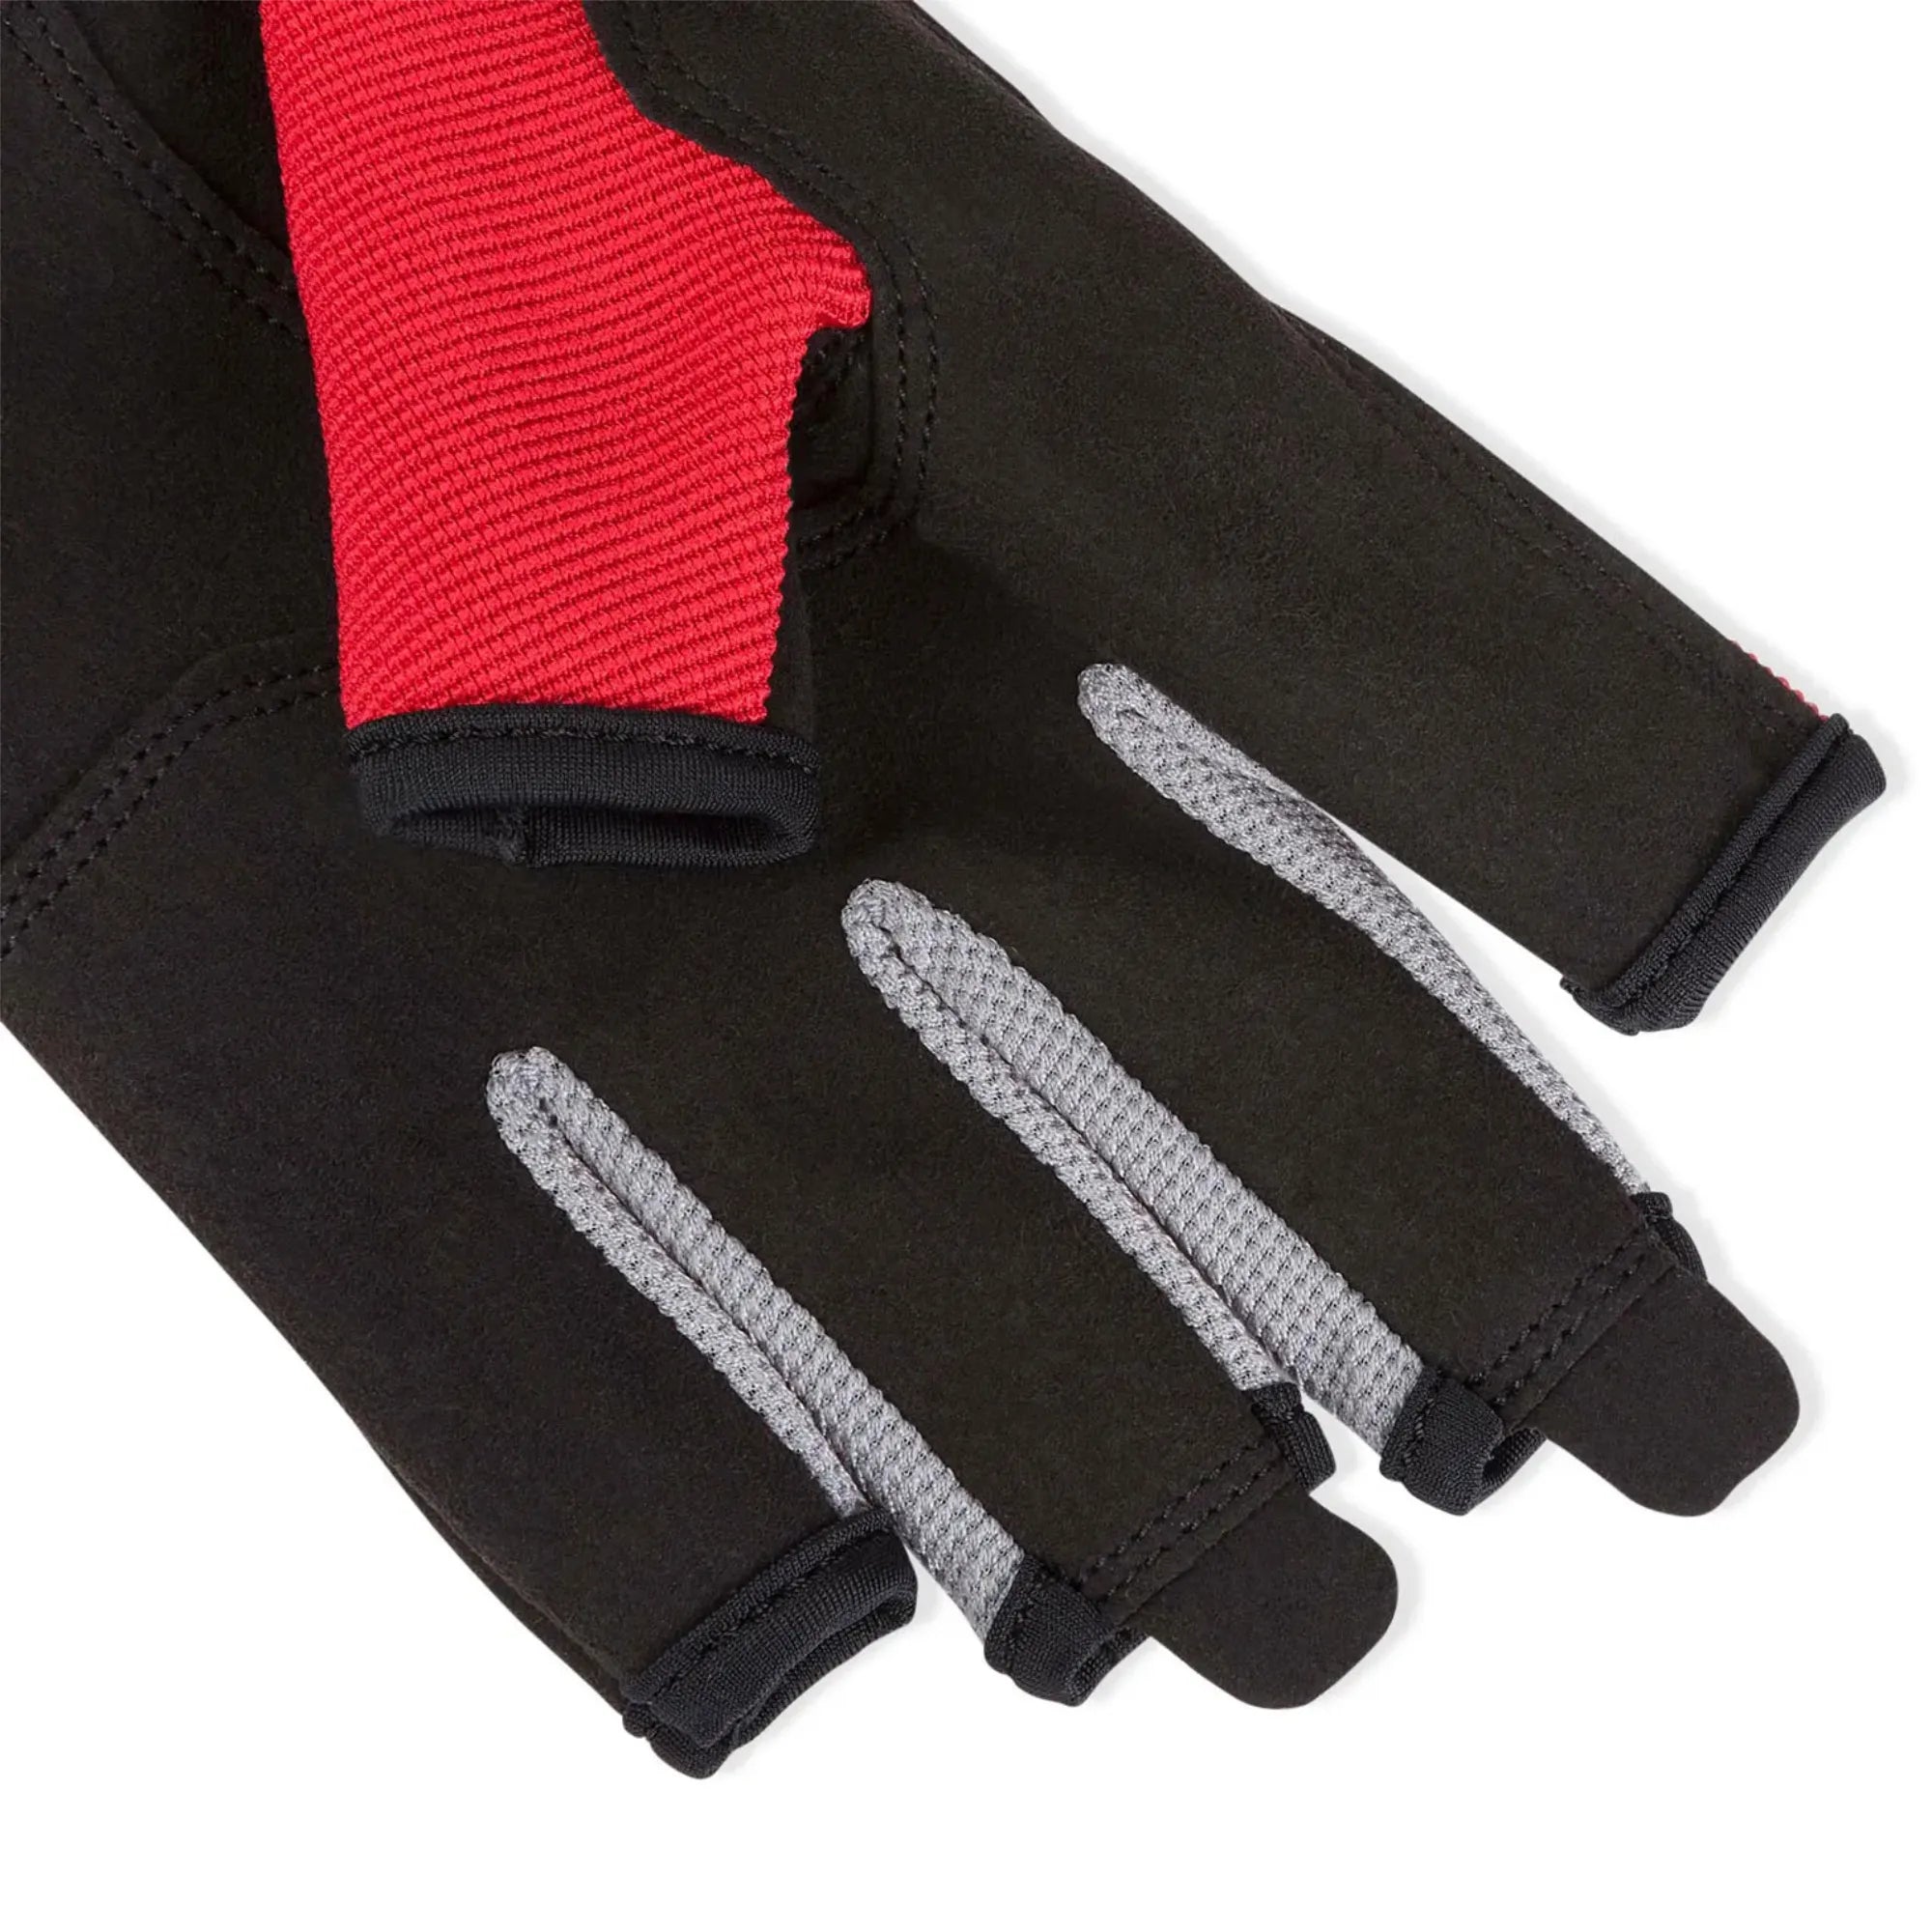 Essential Sailing Short Finger Glove - Black